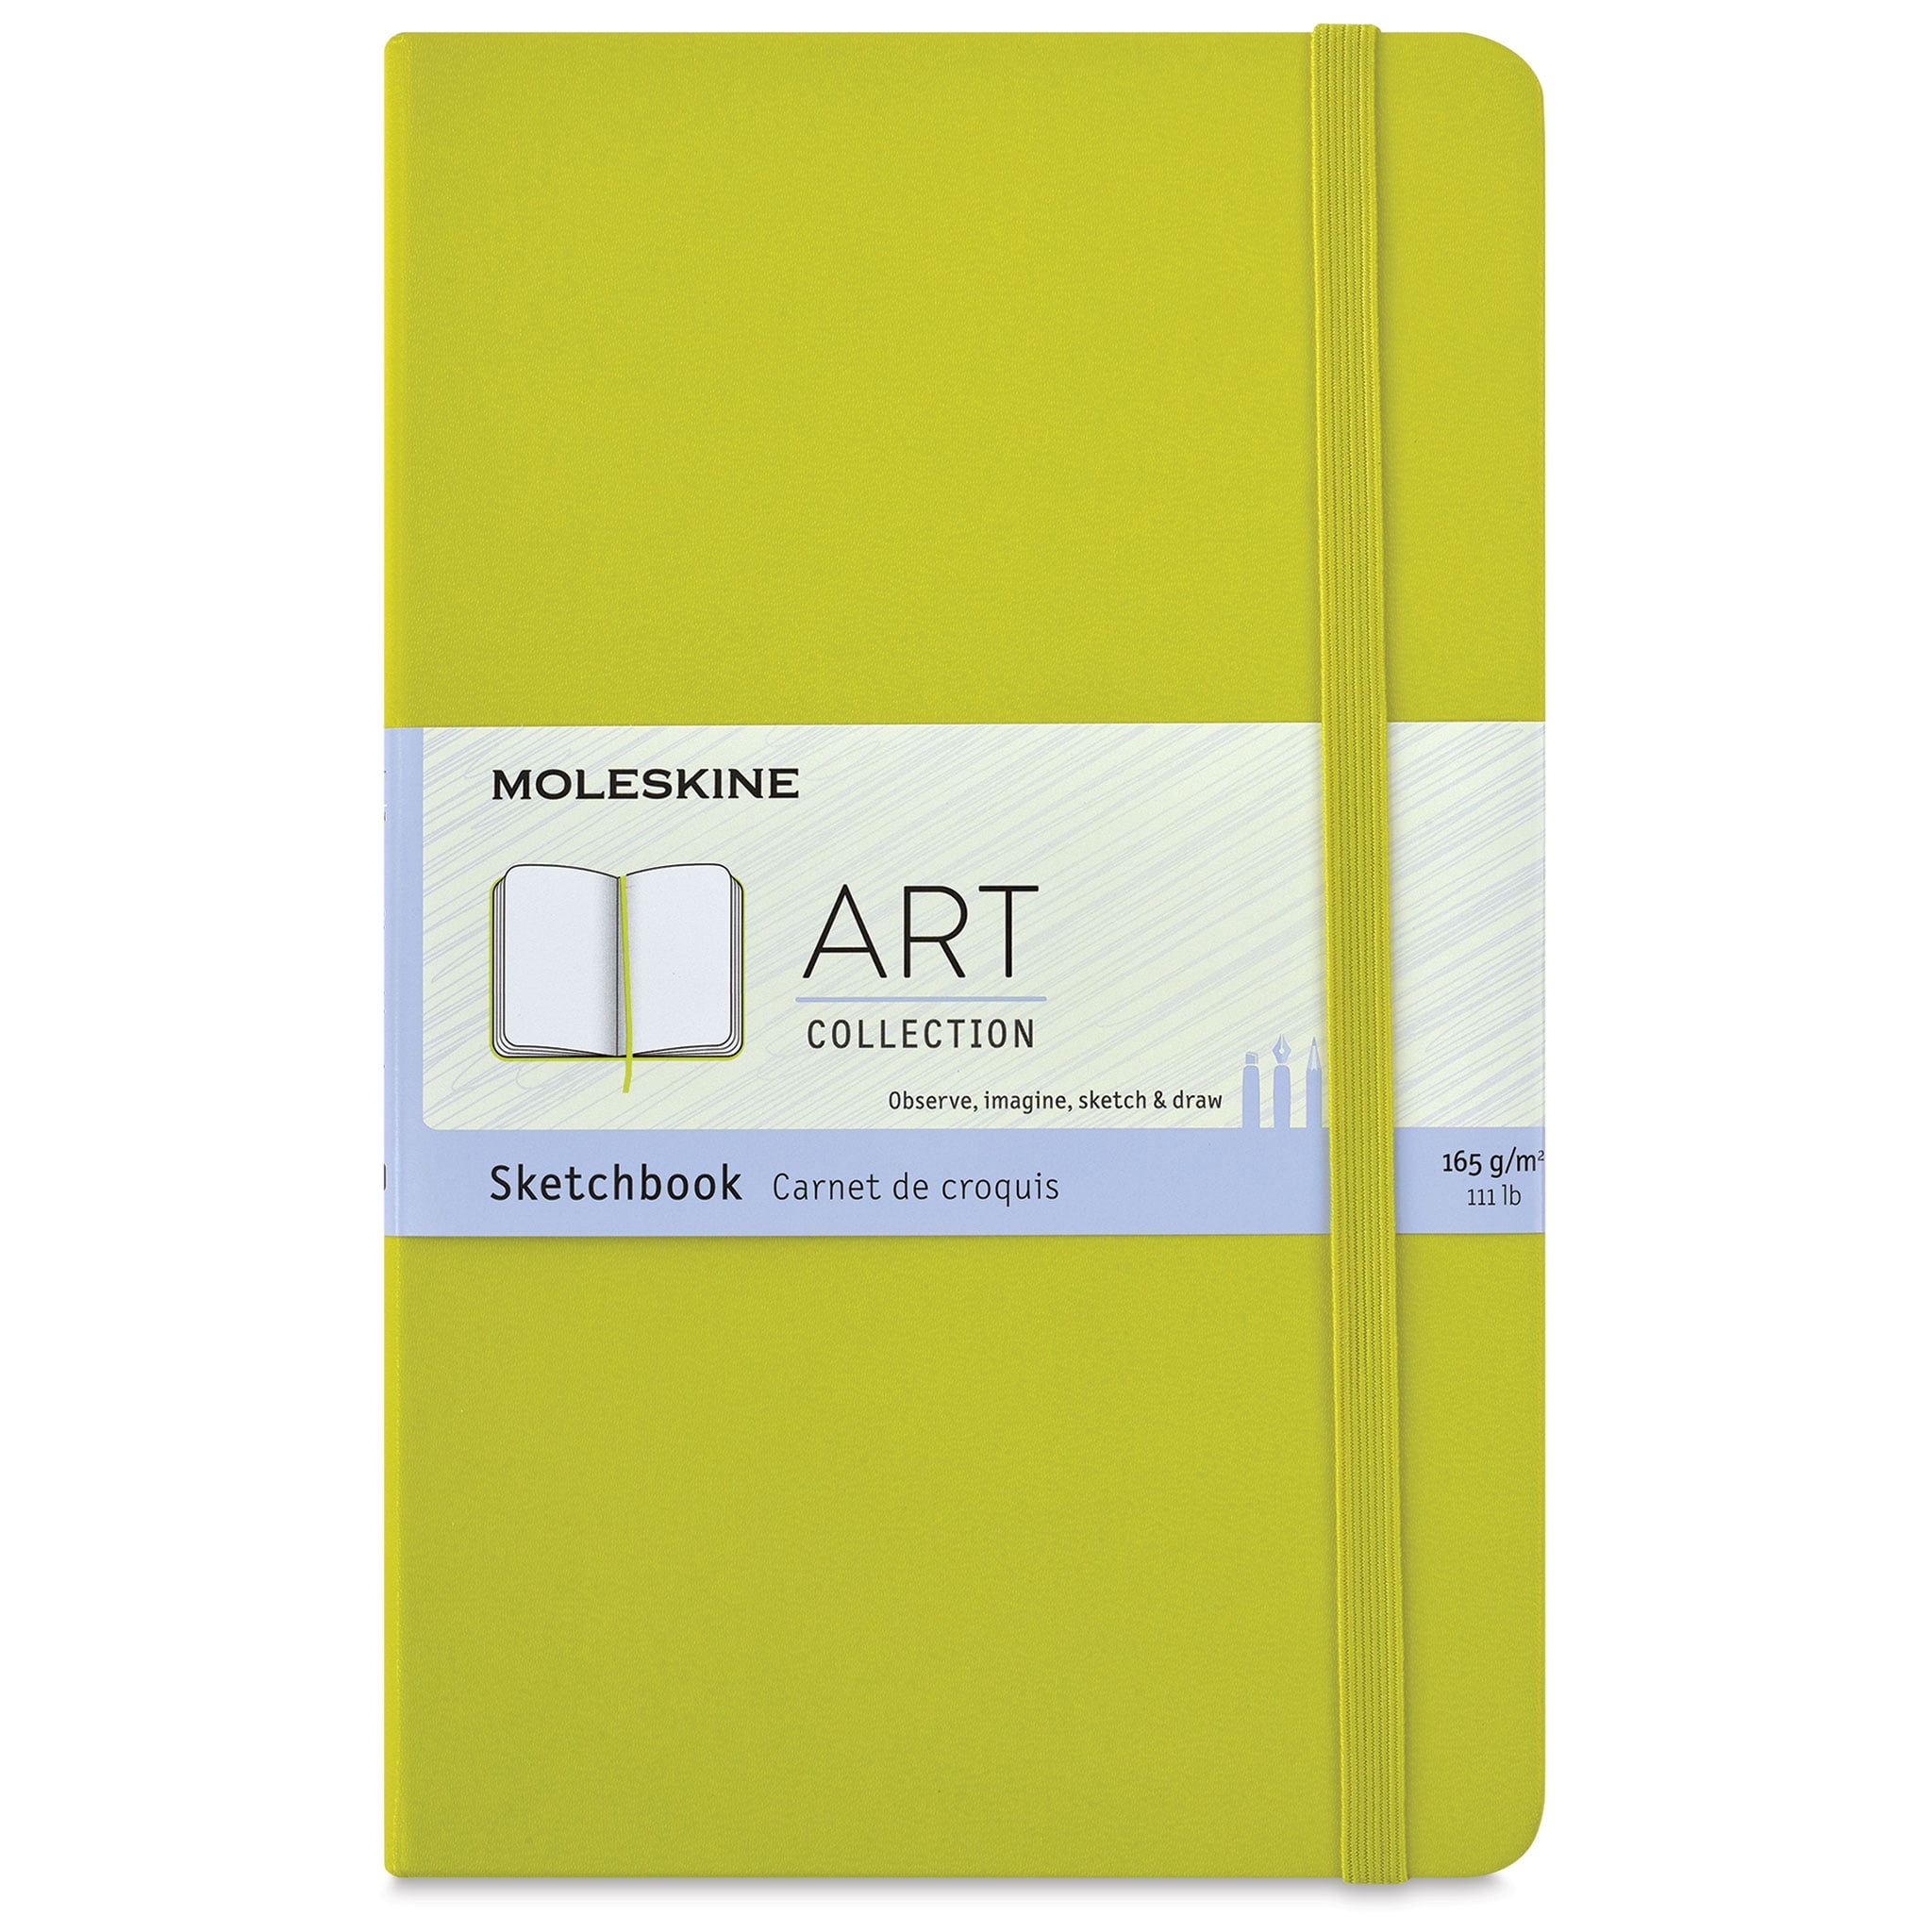 Moleskine Art Collection Sketchbook - Dandelion Yellow, 5 x 8-1/4